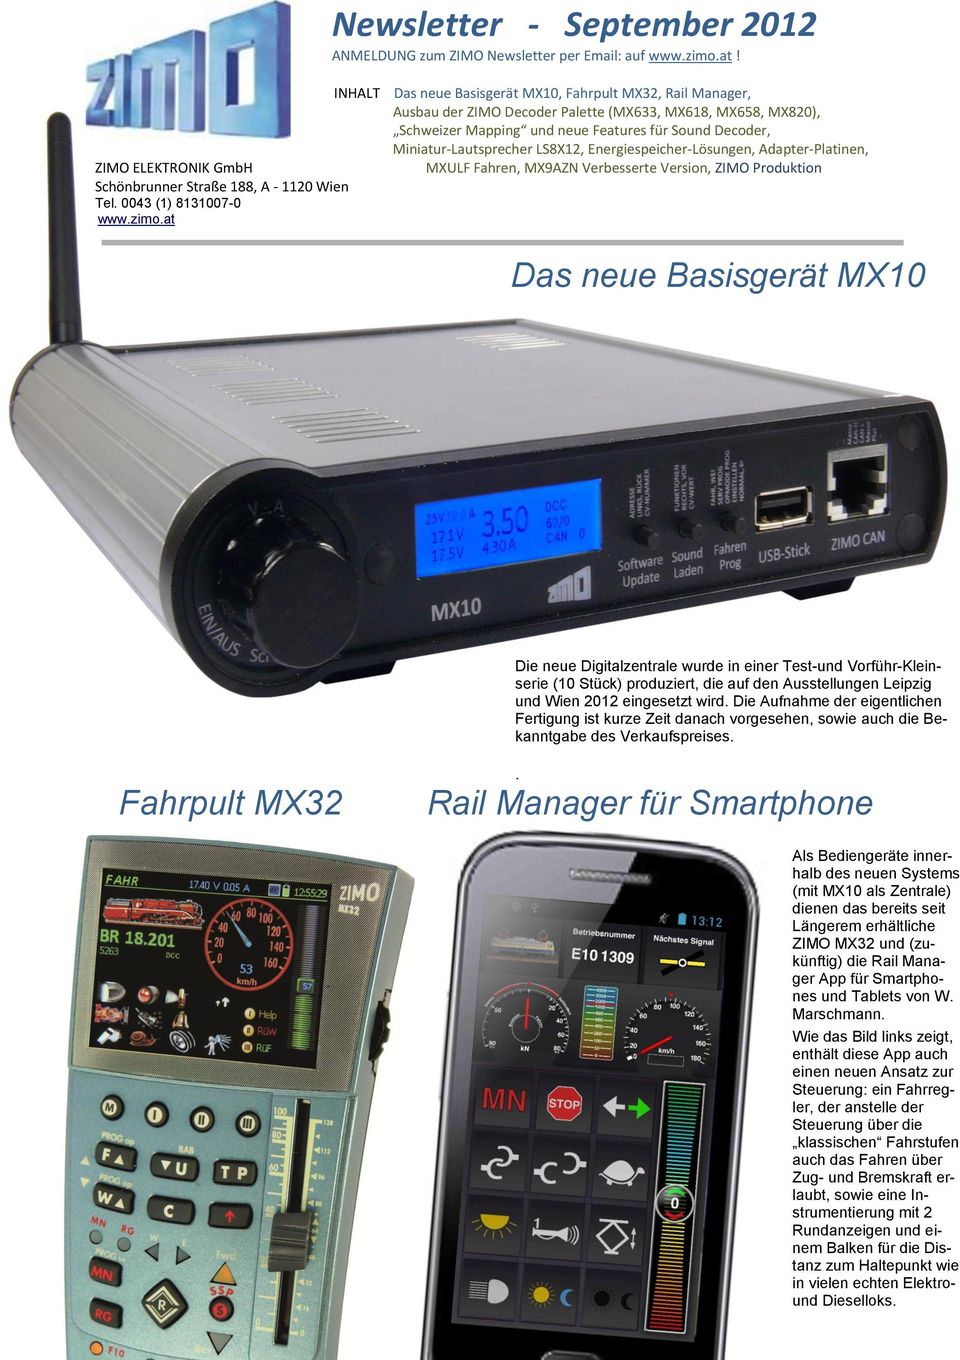 at INHALT Das neue Basisgerät MX10, Fahrpult MX32, Rail Manager, Ausbau der ZIMO Decoder Palette (MX633, MX618, MX658, MX820), Schweizer Mapping und neue Features für Sound Decoder,